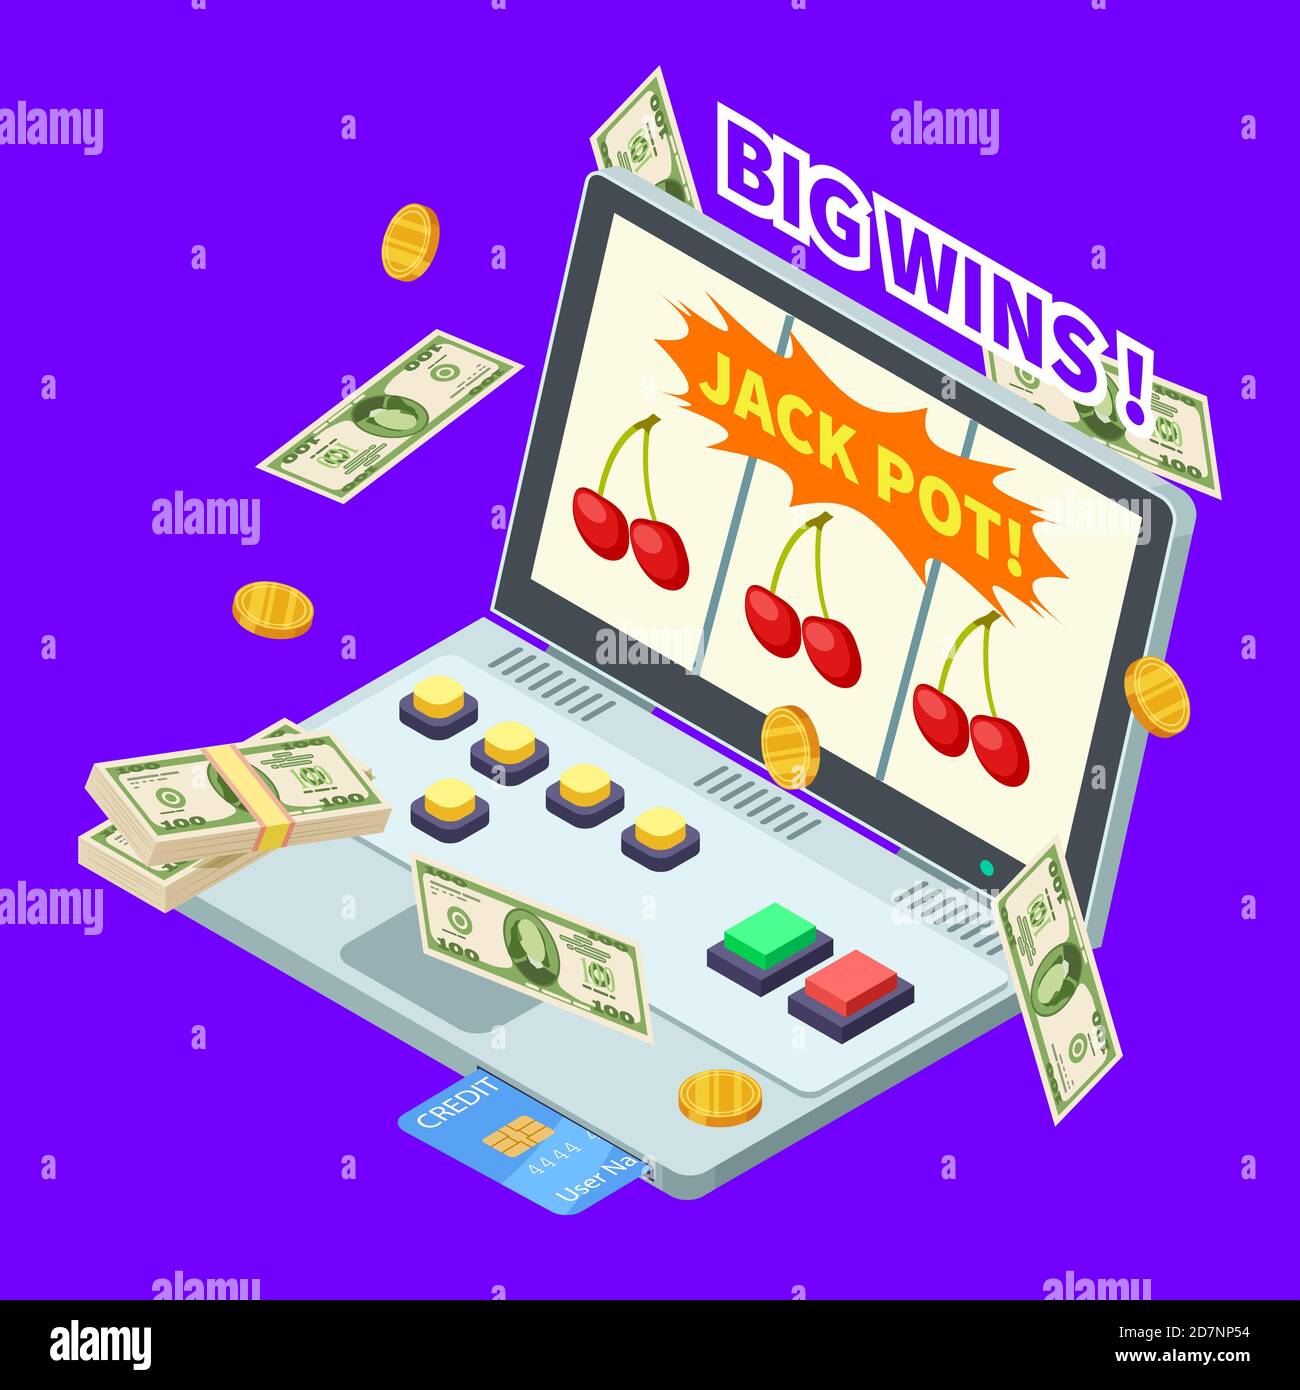 Online-Casino, Jackpot gewinnen, Banknoten, Münzen und Kreditkarte auf Laptop isometrische Vektor-Illustration. Casino und Jackpot online, Glücksspiel-Spiel auf Laptop Stock Vektor